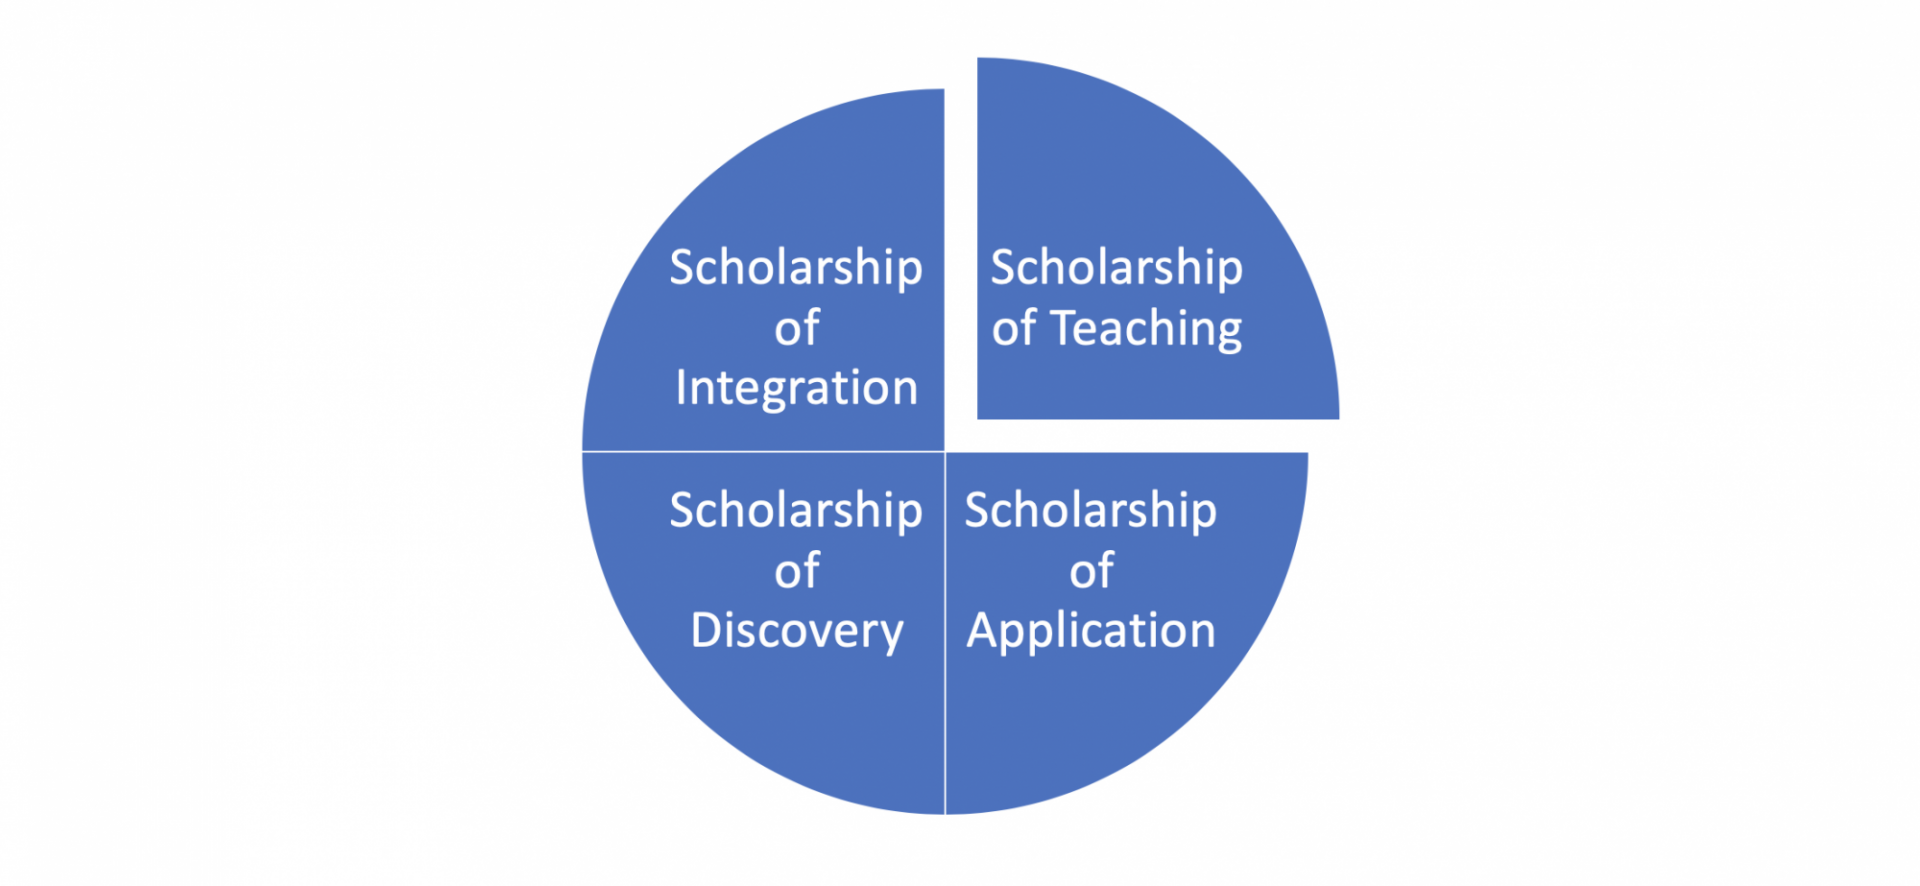 Boyer's Scholarship Framework